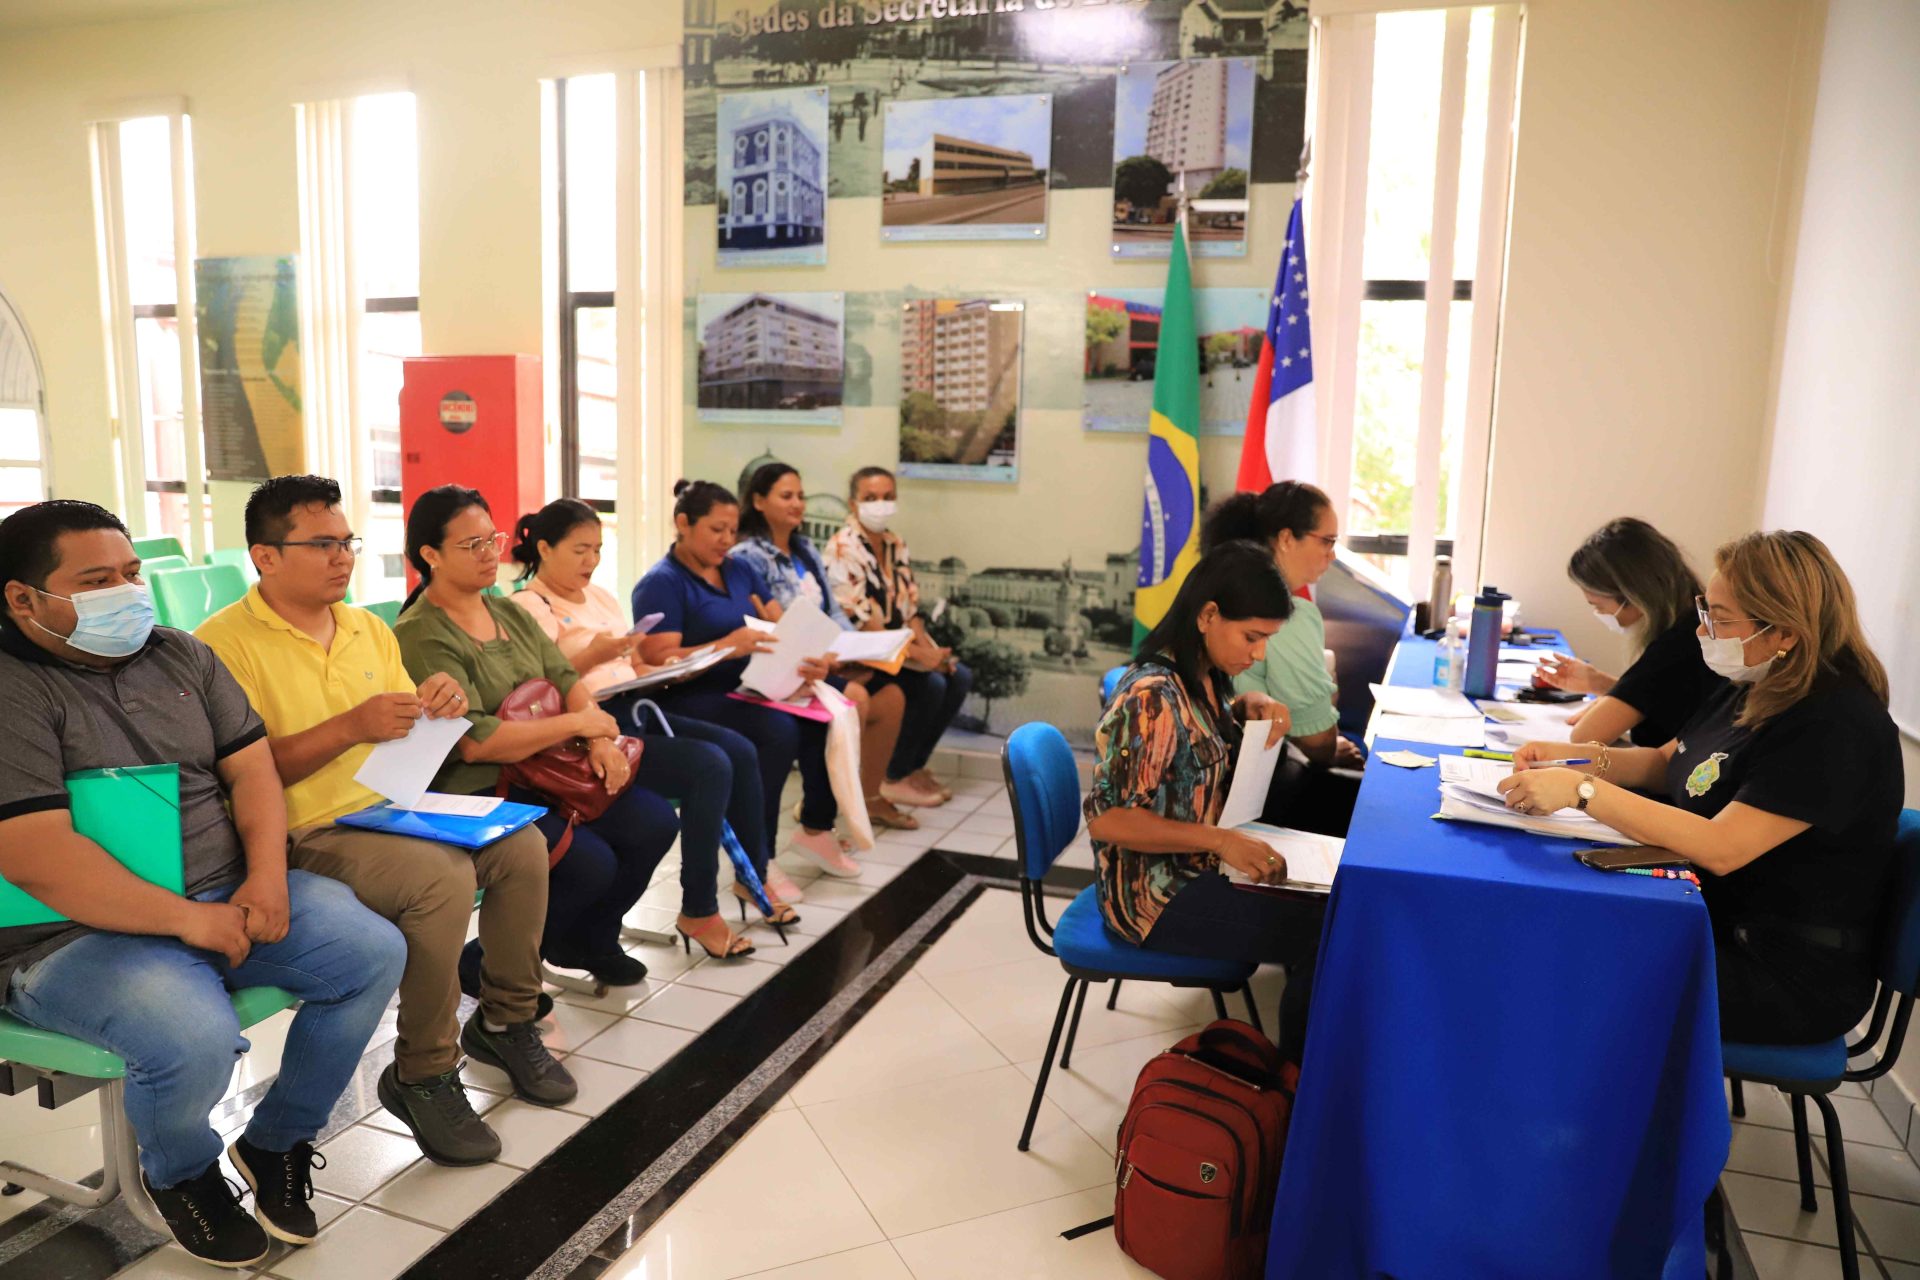 Secretaria de Educação do AM aguarda os candidatos para apresentação - Foto: Eduardo Cavalcante / Secretaria de Estado de Educação e Desporto